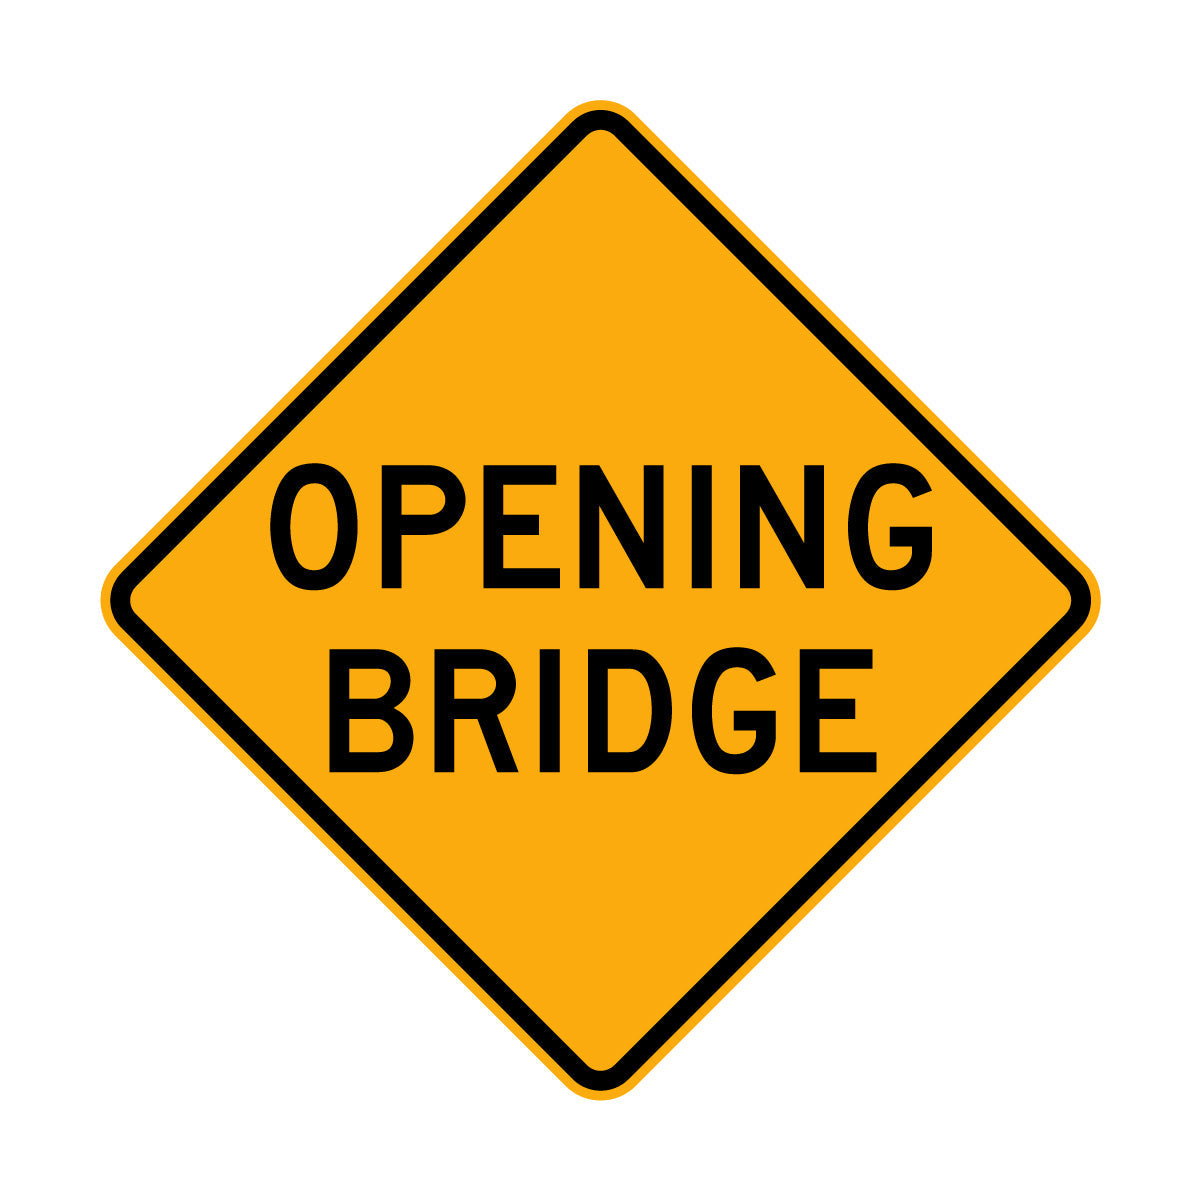 Warning: Opening Bridge Sign